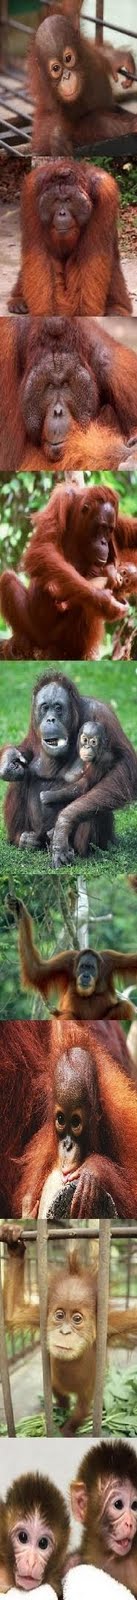 we love orang utans ,